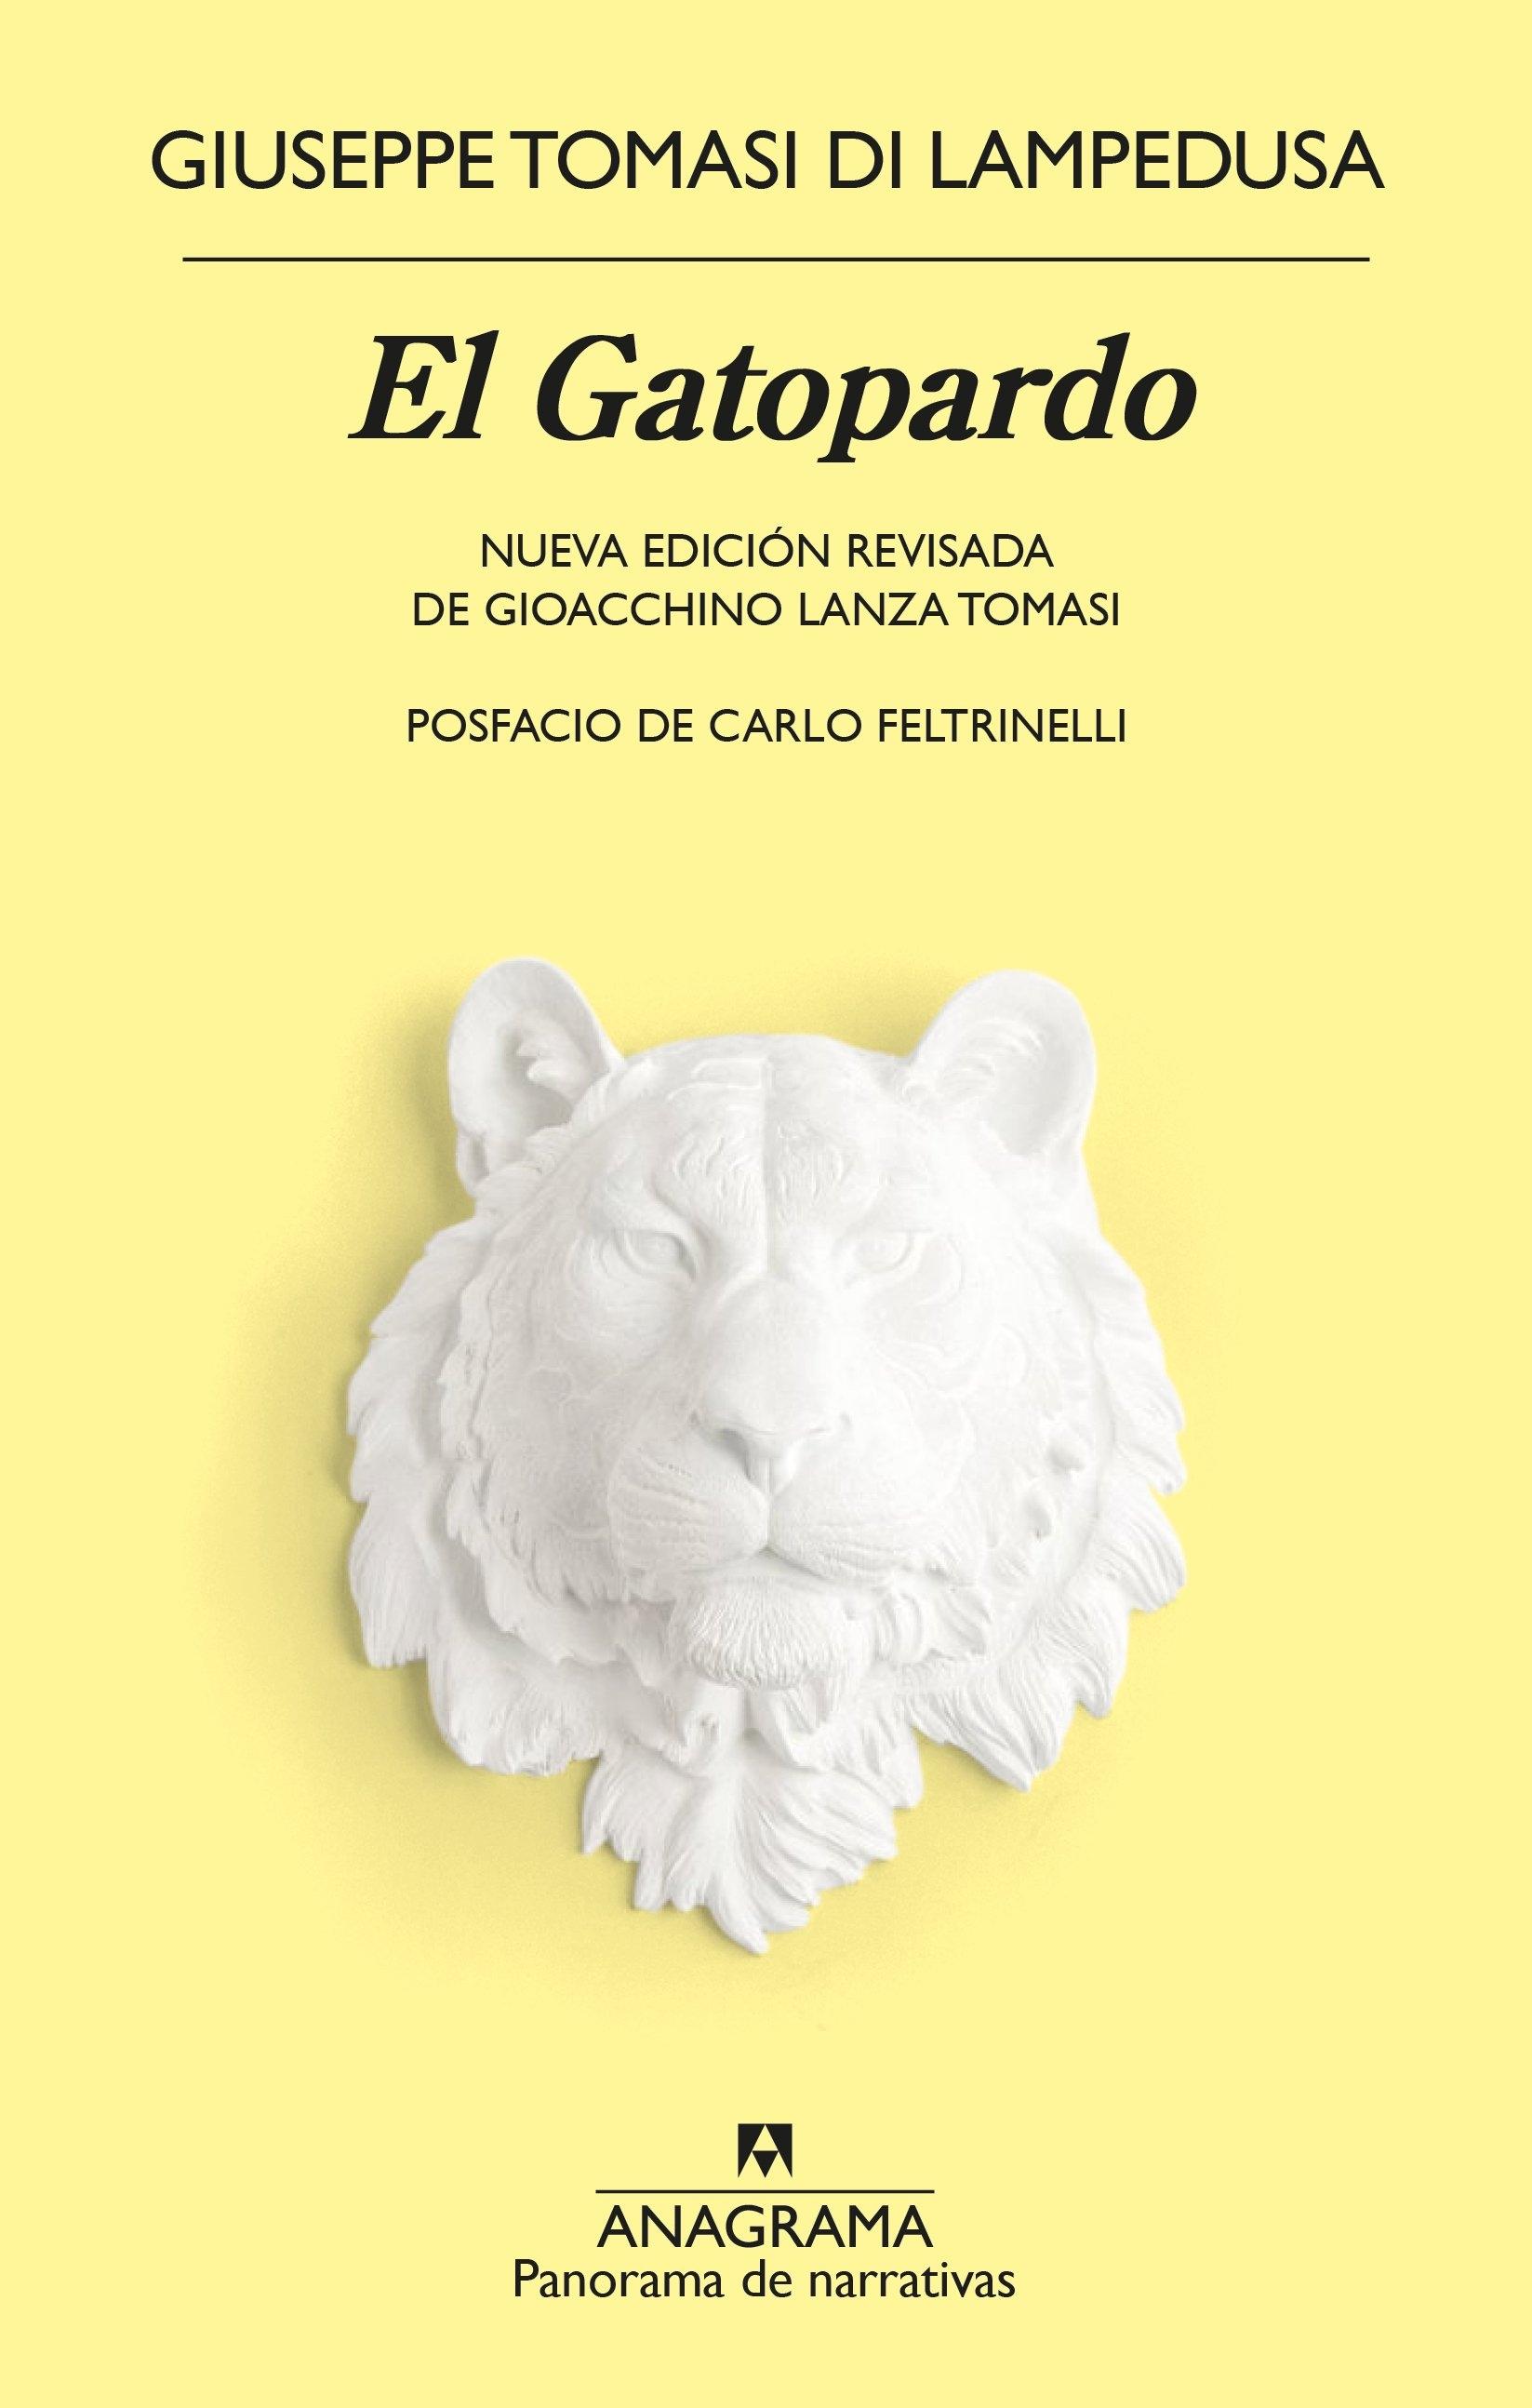 El Gatopardo "Nueva Edición Revisada de Gioacchino Lanza Tomasi. Posfacio de Carlo Feltrinelli". 